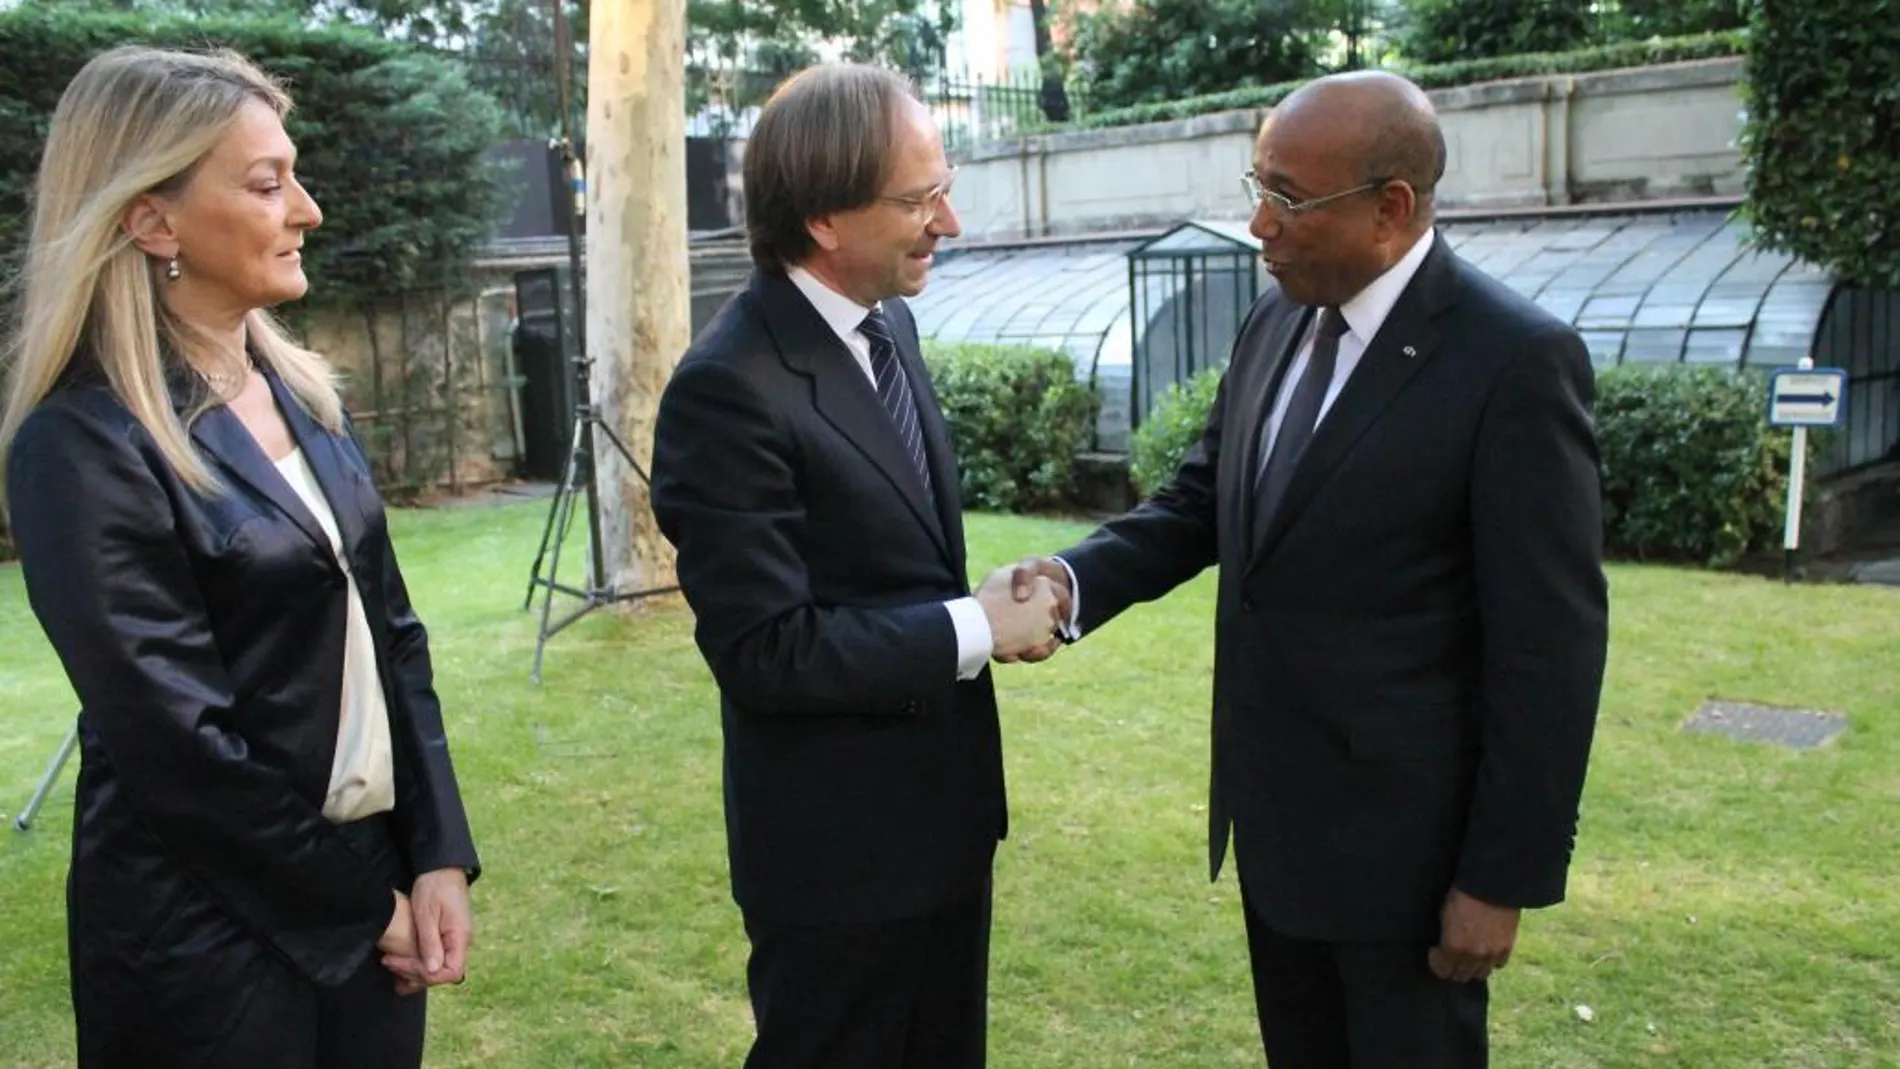 El embajador Pietro Sebastiani, (en el centro) recibe el saludo protocolario del Encargado de Negocios de Haití, don Hubert Labbé, en presencia de su esposa María Cristina Sebastiani (a la izquierda)